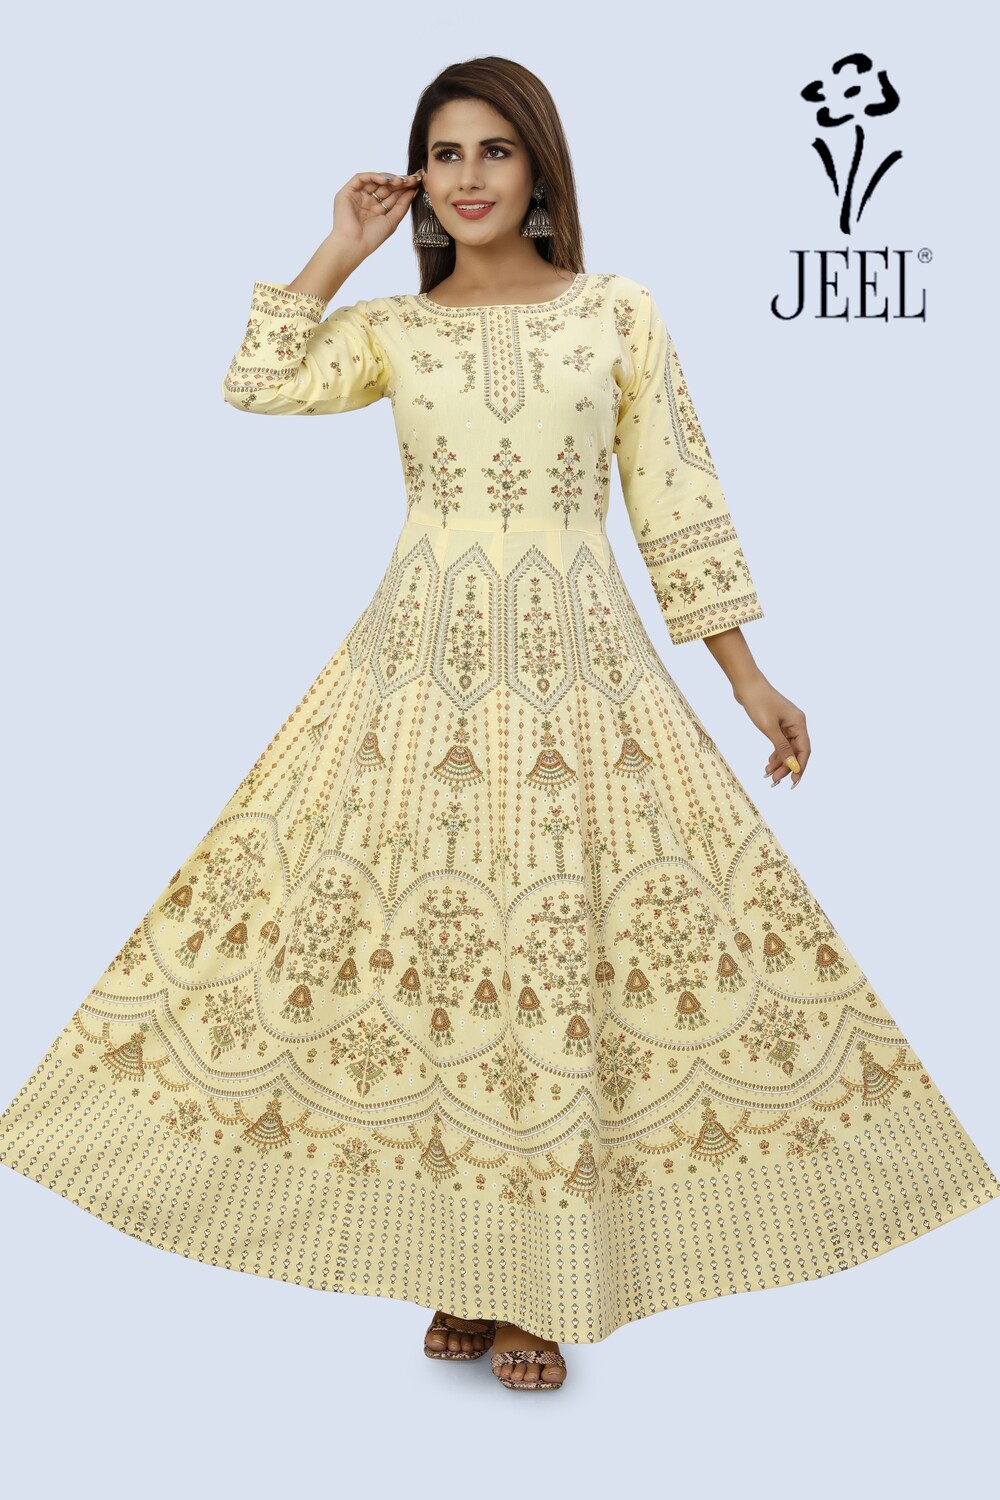 JEEL Jaipur Gown